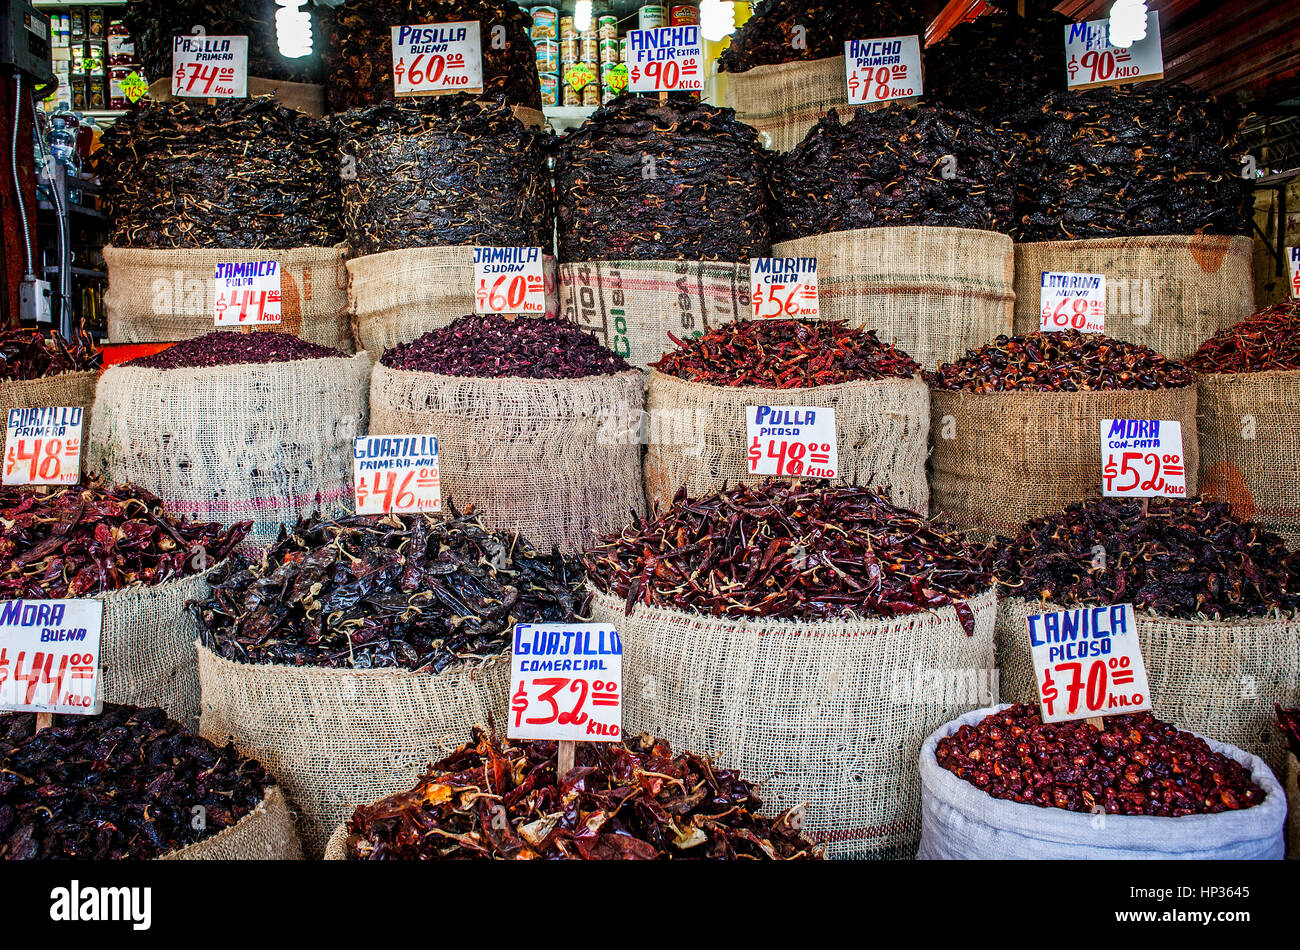 De la Merced market, Chile or pepper shop, Mexico City, Mexico Stock Photo